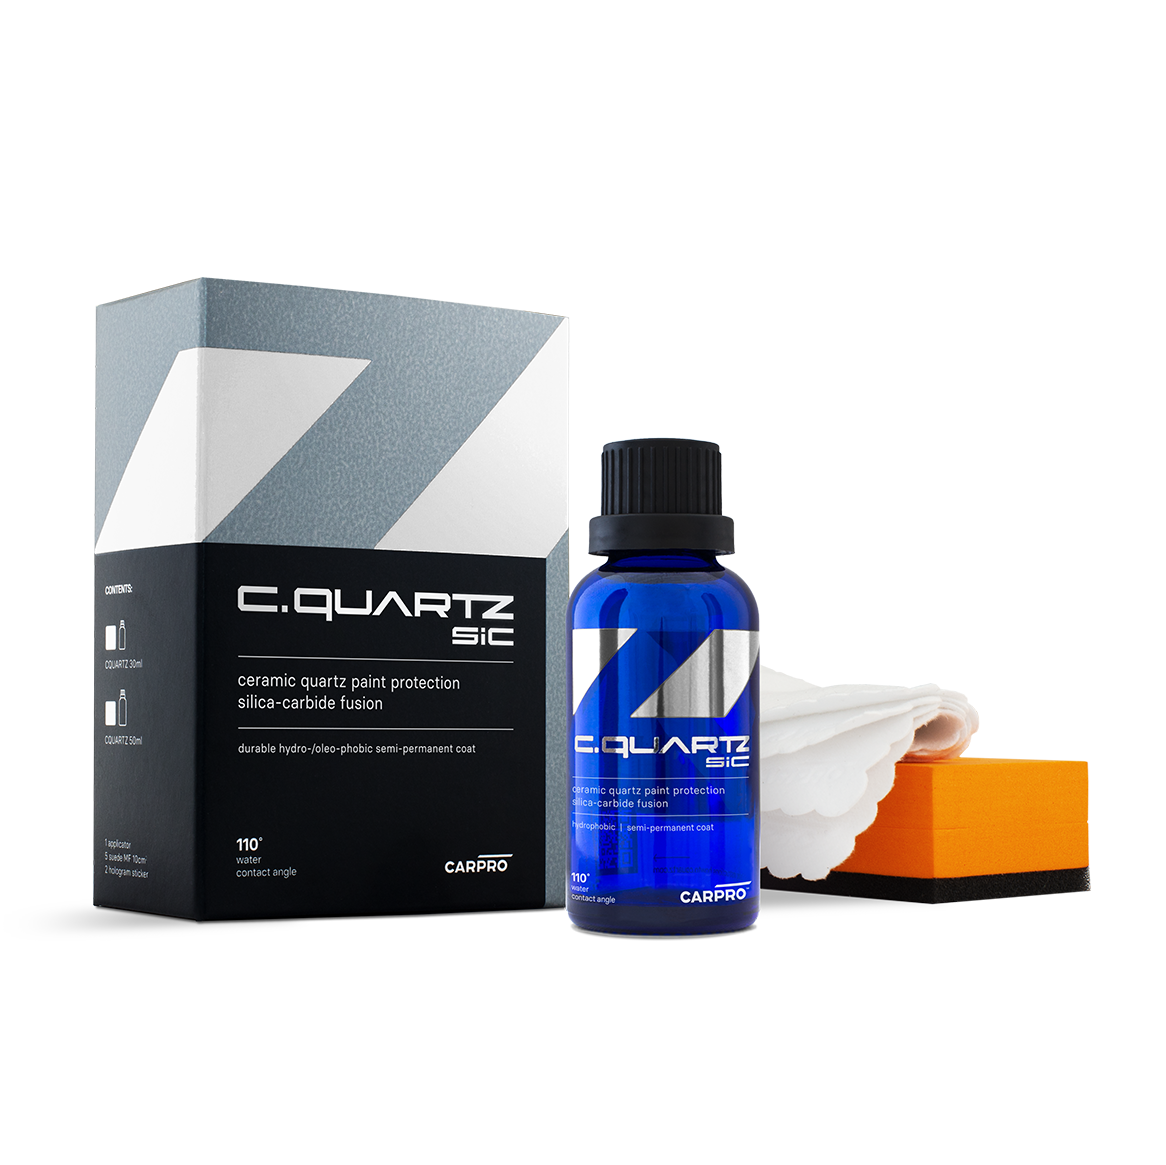 Cquartz SIC 50ml paint protection kit